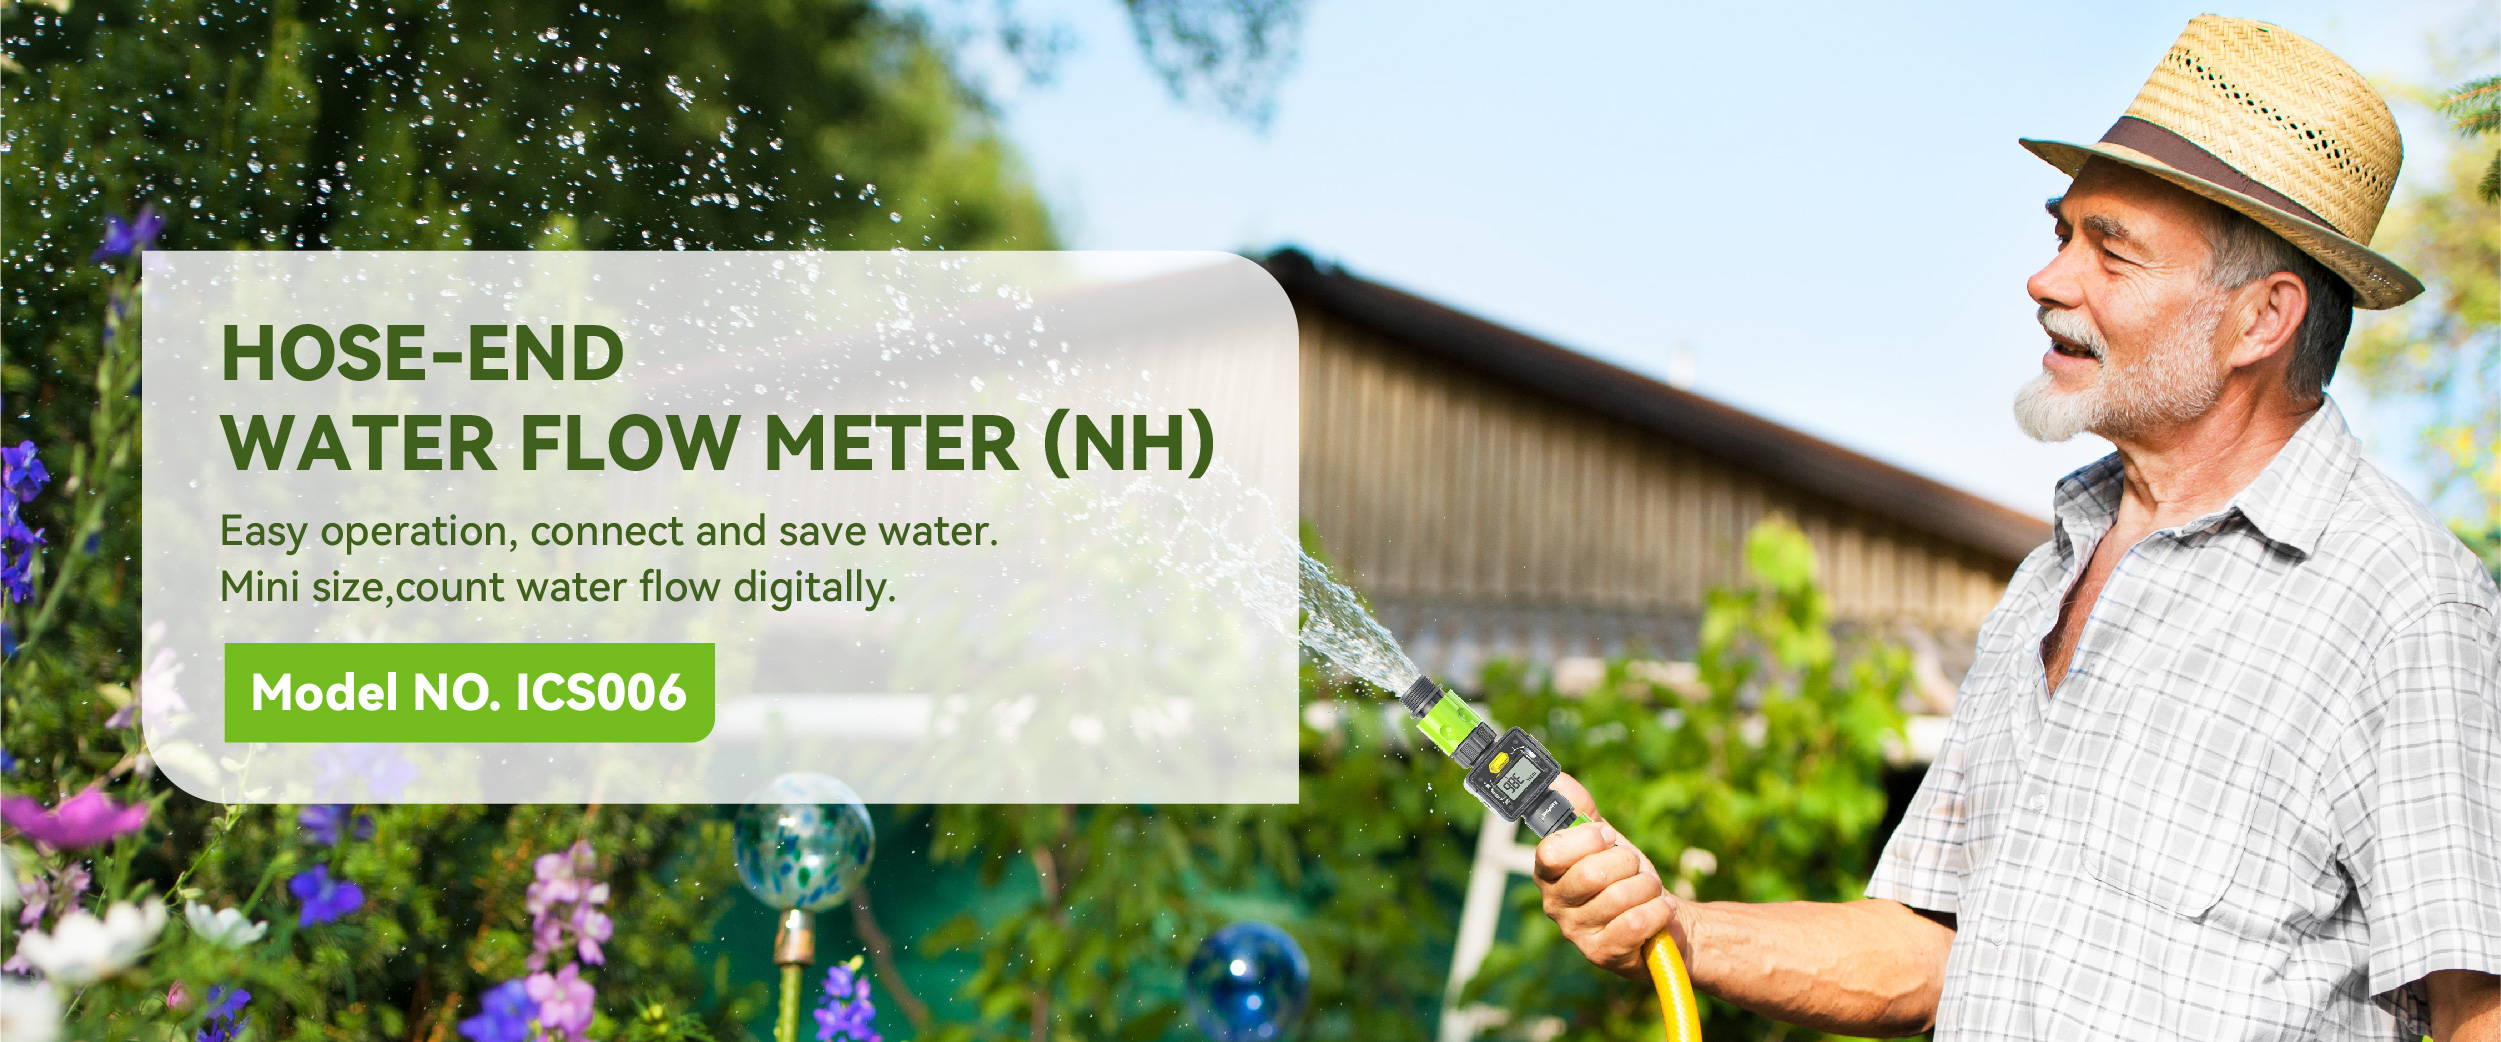 RainPoint Digital Hose-End Water Flow Meter